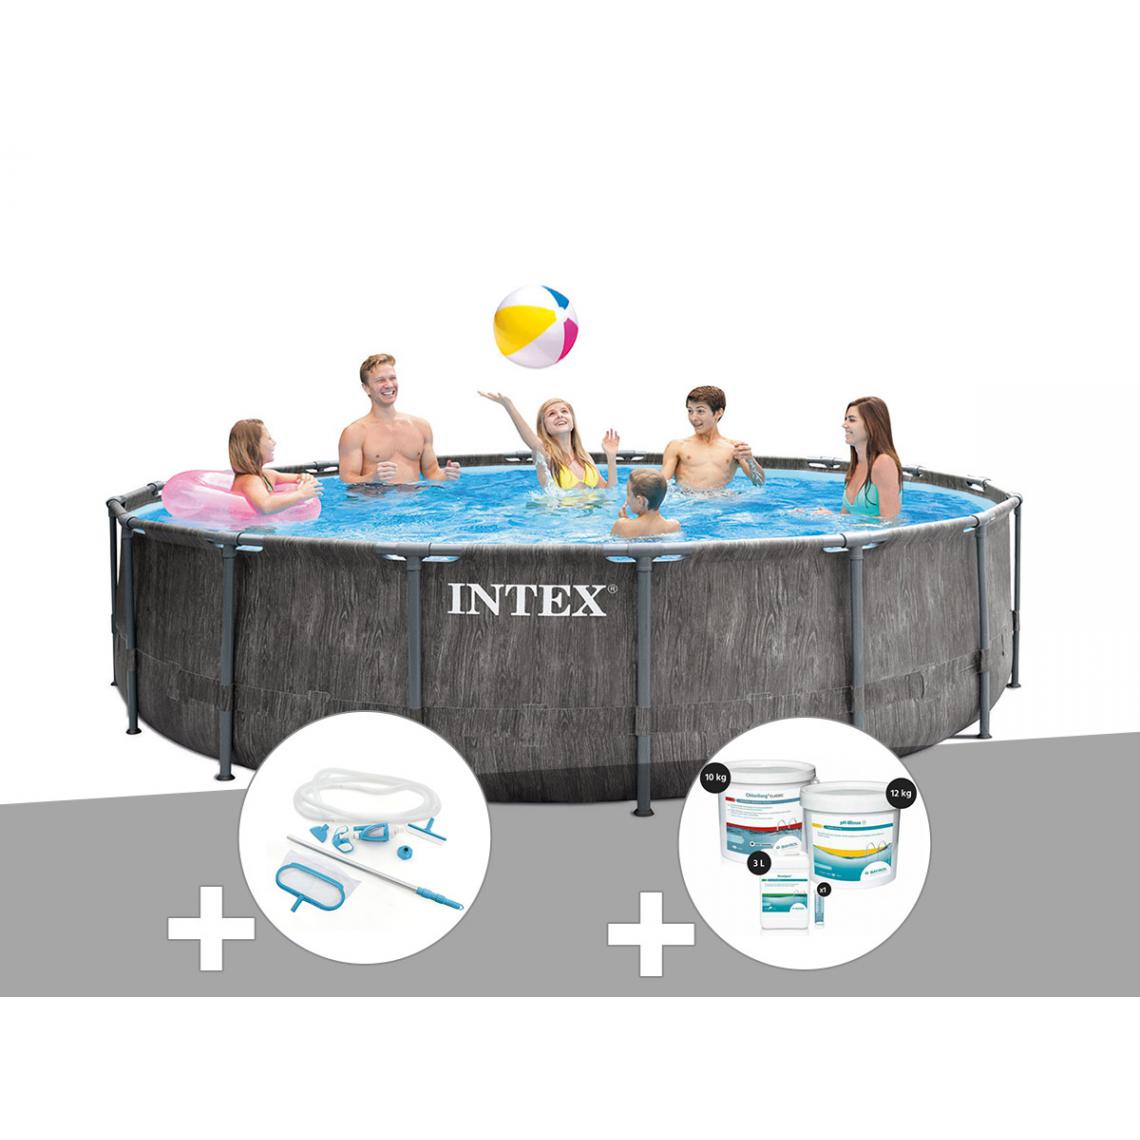 Intex - Kit piscine tubulaire Intex Baltik ronde 5,49 x 1,22 m + Kit d'entretien + Kit de traitement au chlore - Piscine Tubulaire